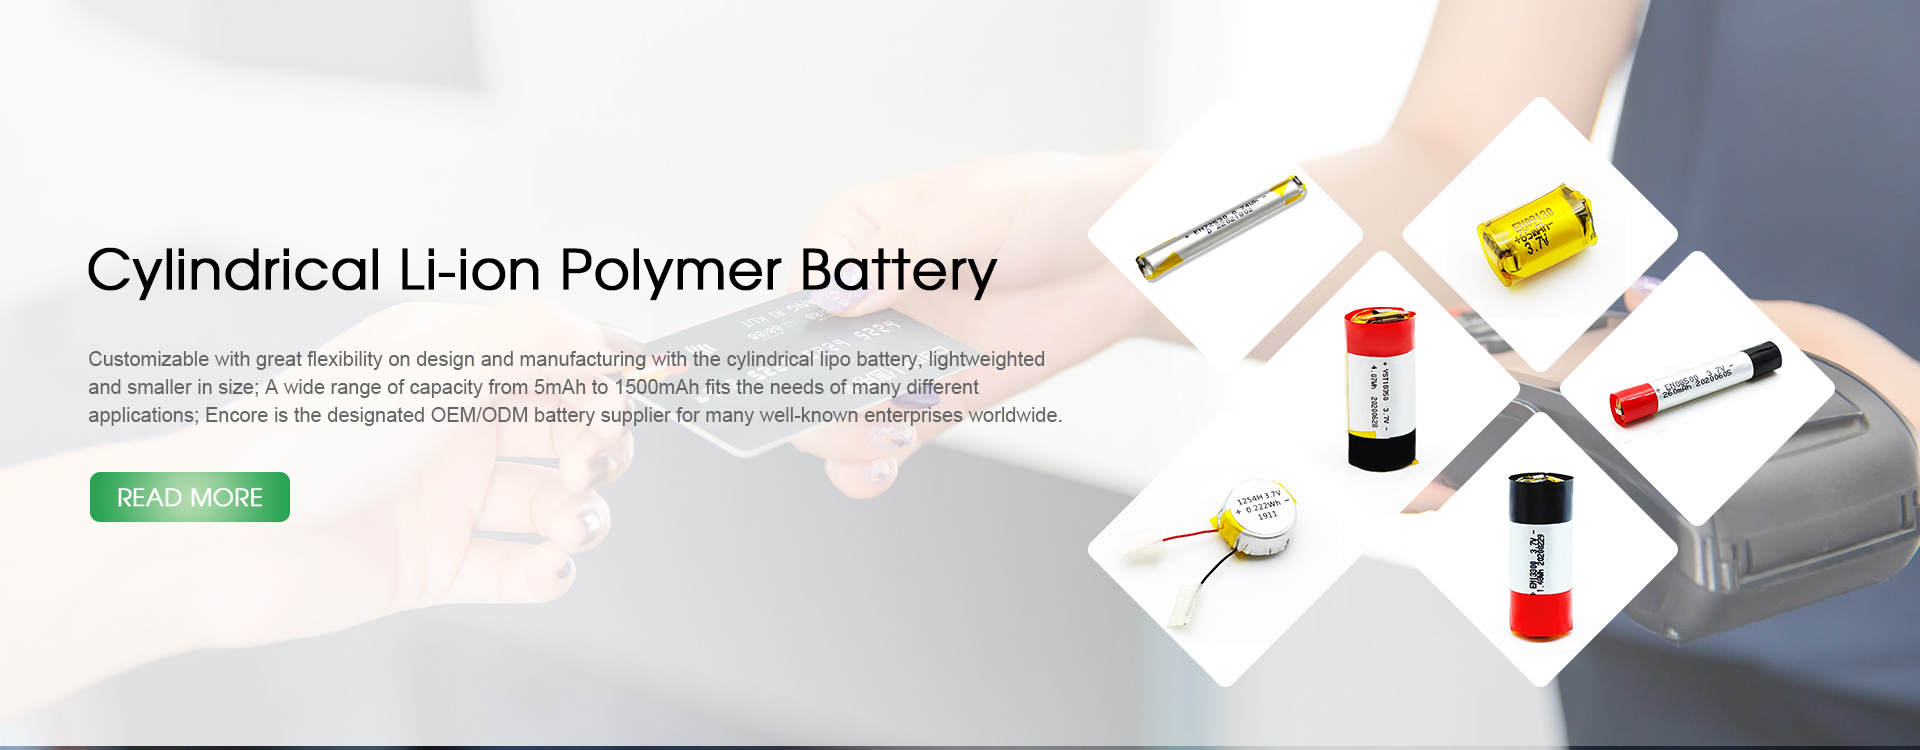 Producenci baterii cylindrycznych litowo-polimerowych